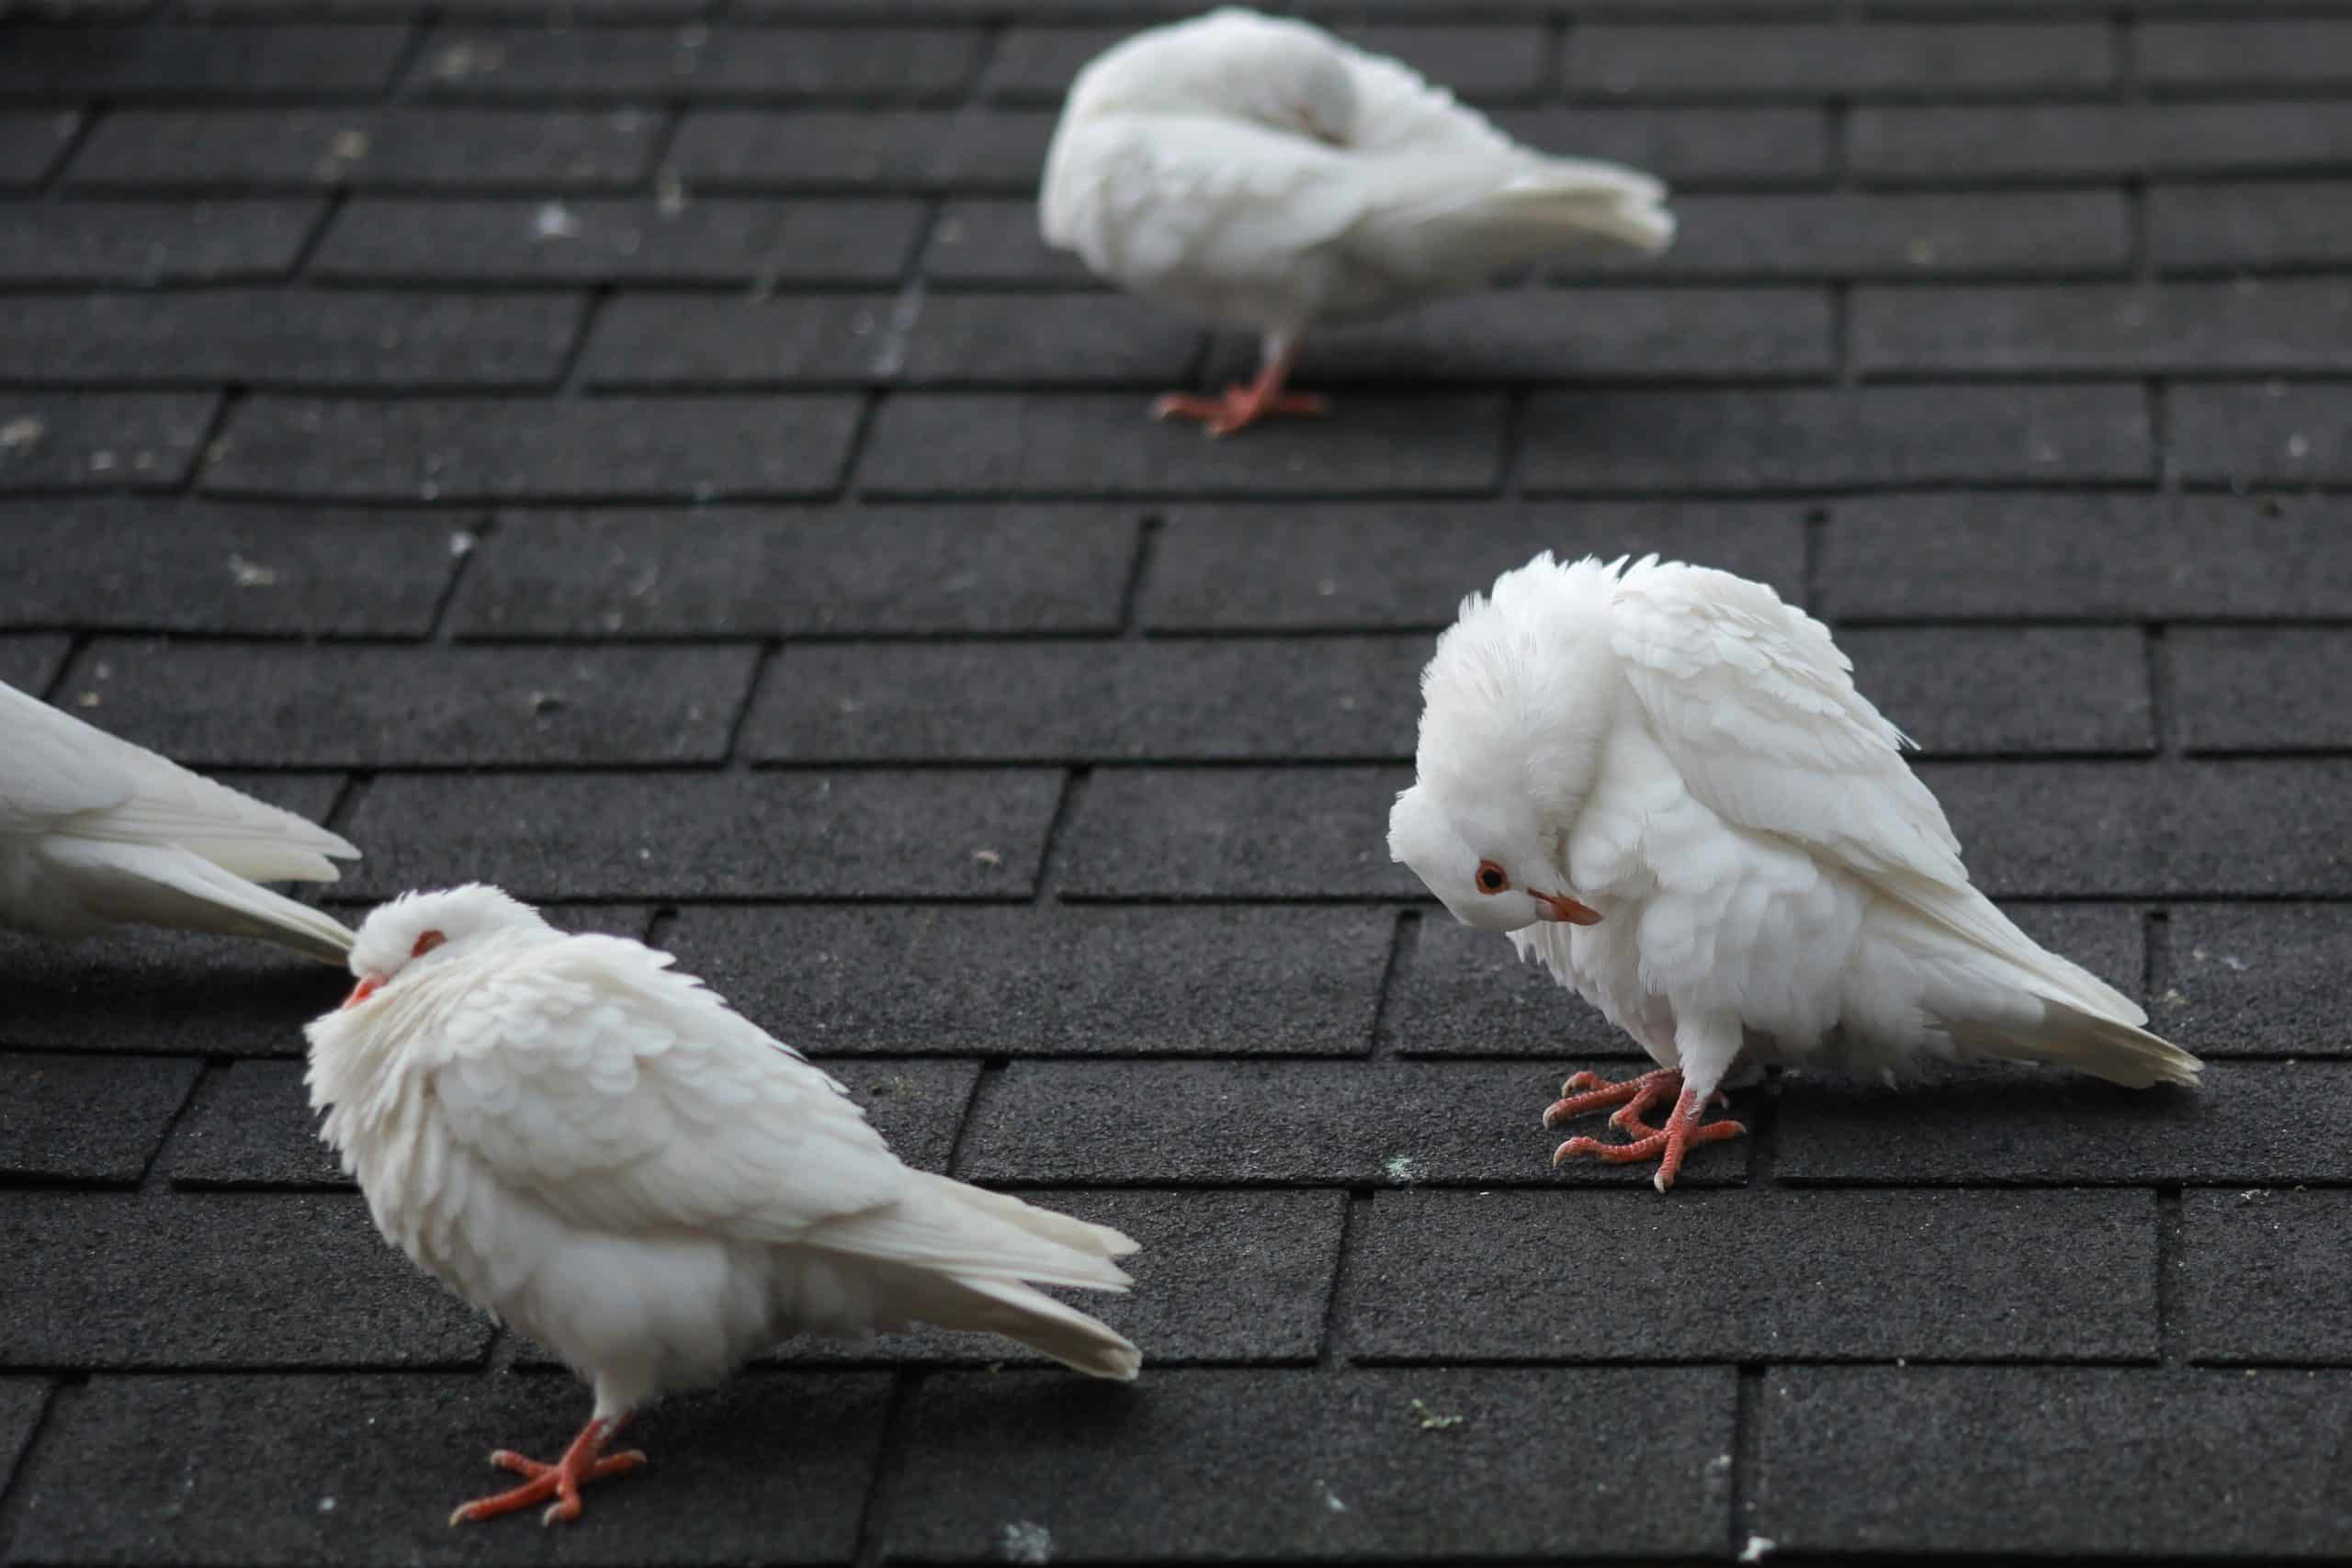 Le pic anti-pigeon : quel est son fonctionnement, ses avantages et inconvénients ?